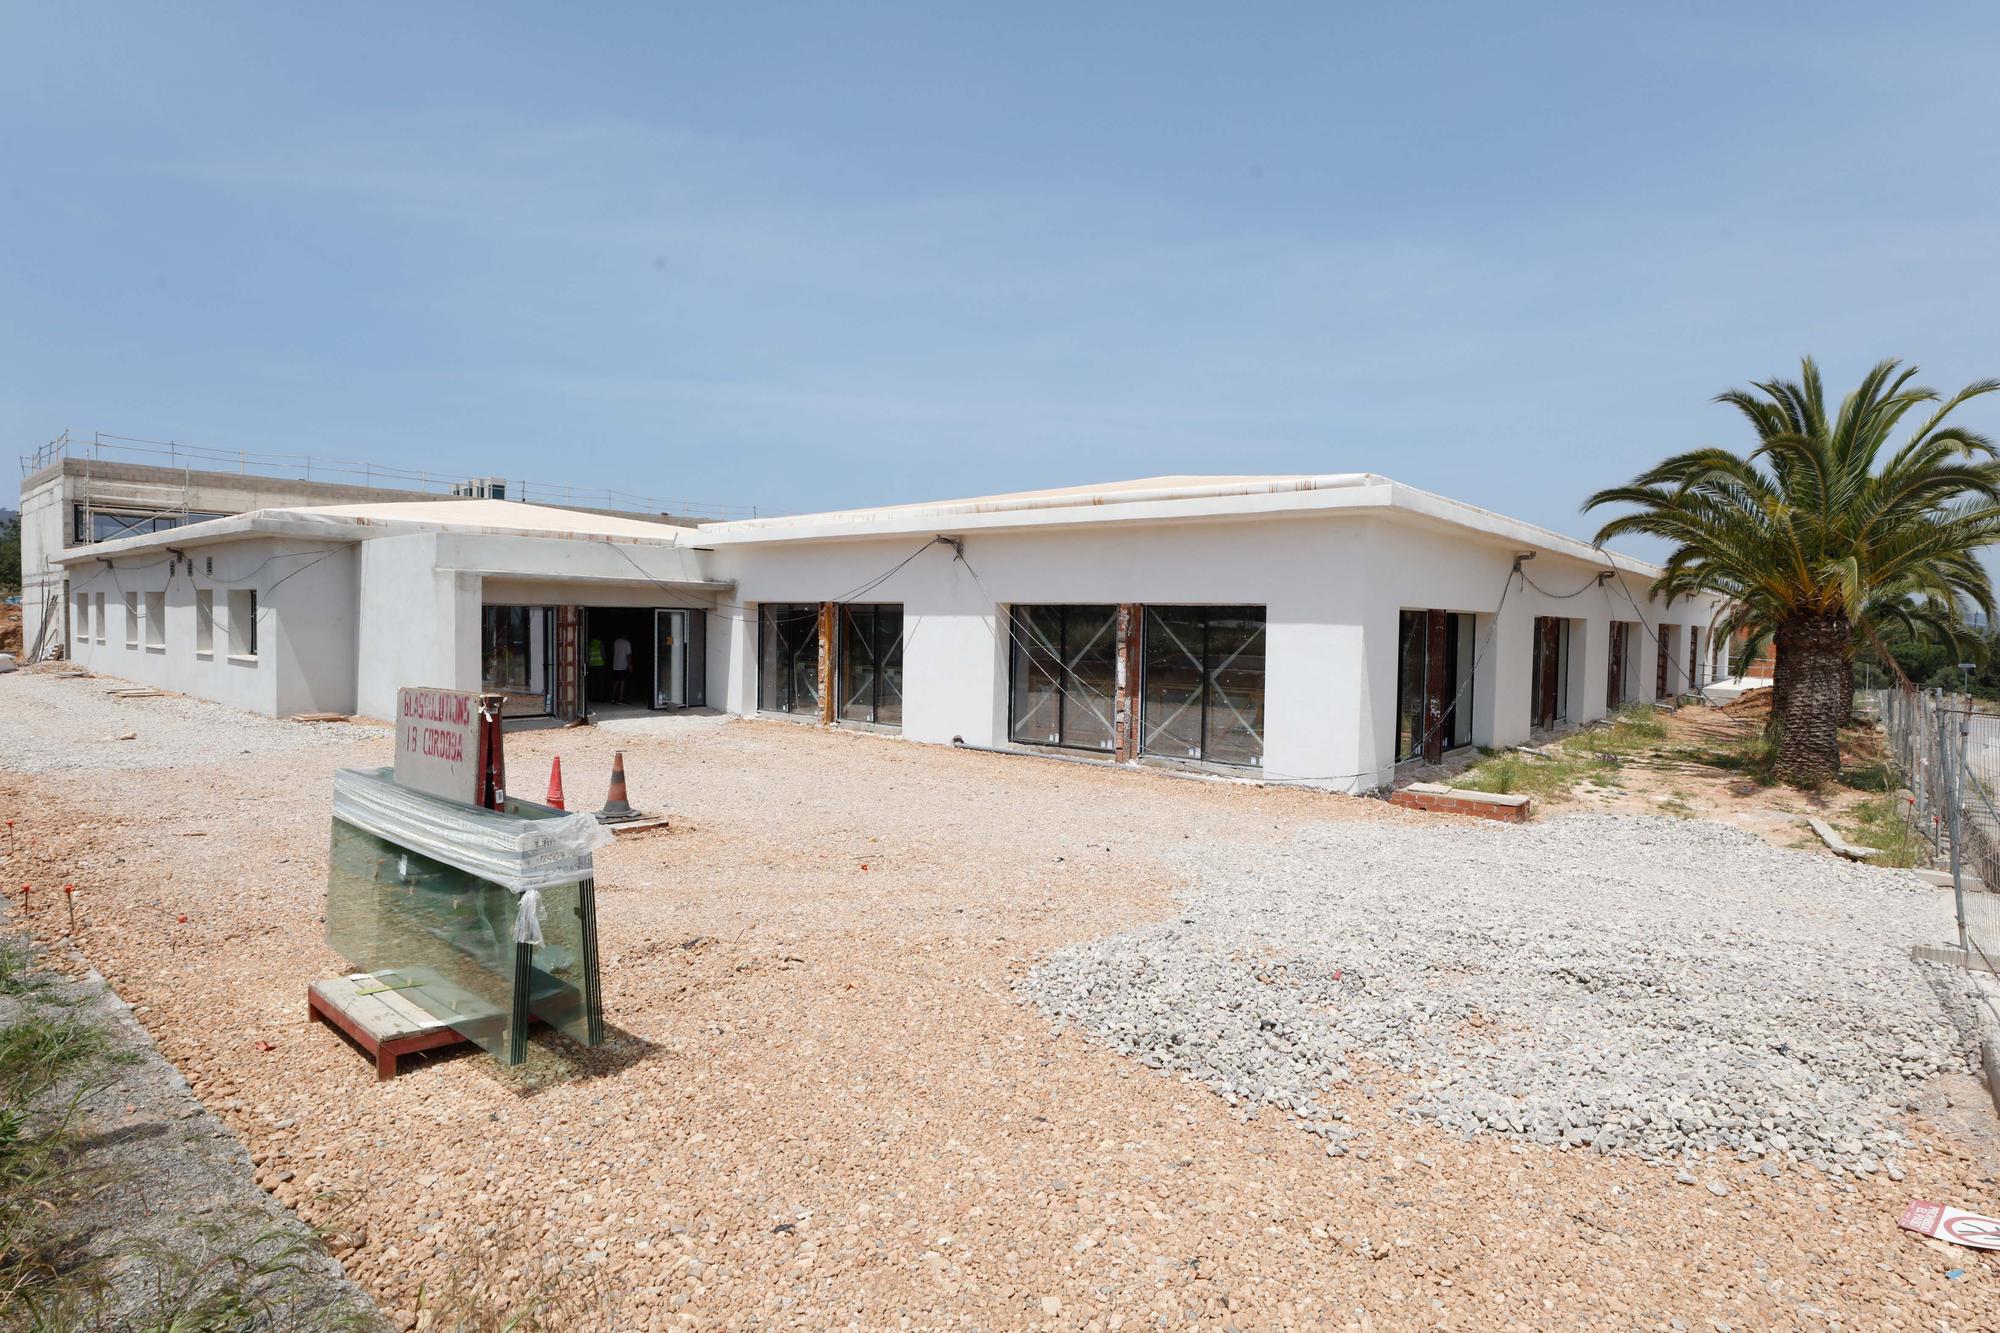 La Escuela de Hostelería de Ibiza empezará a impartir cursos en 2023